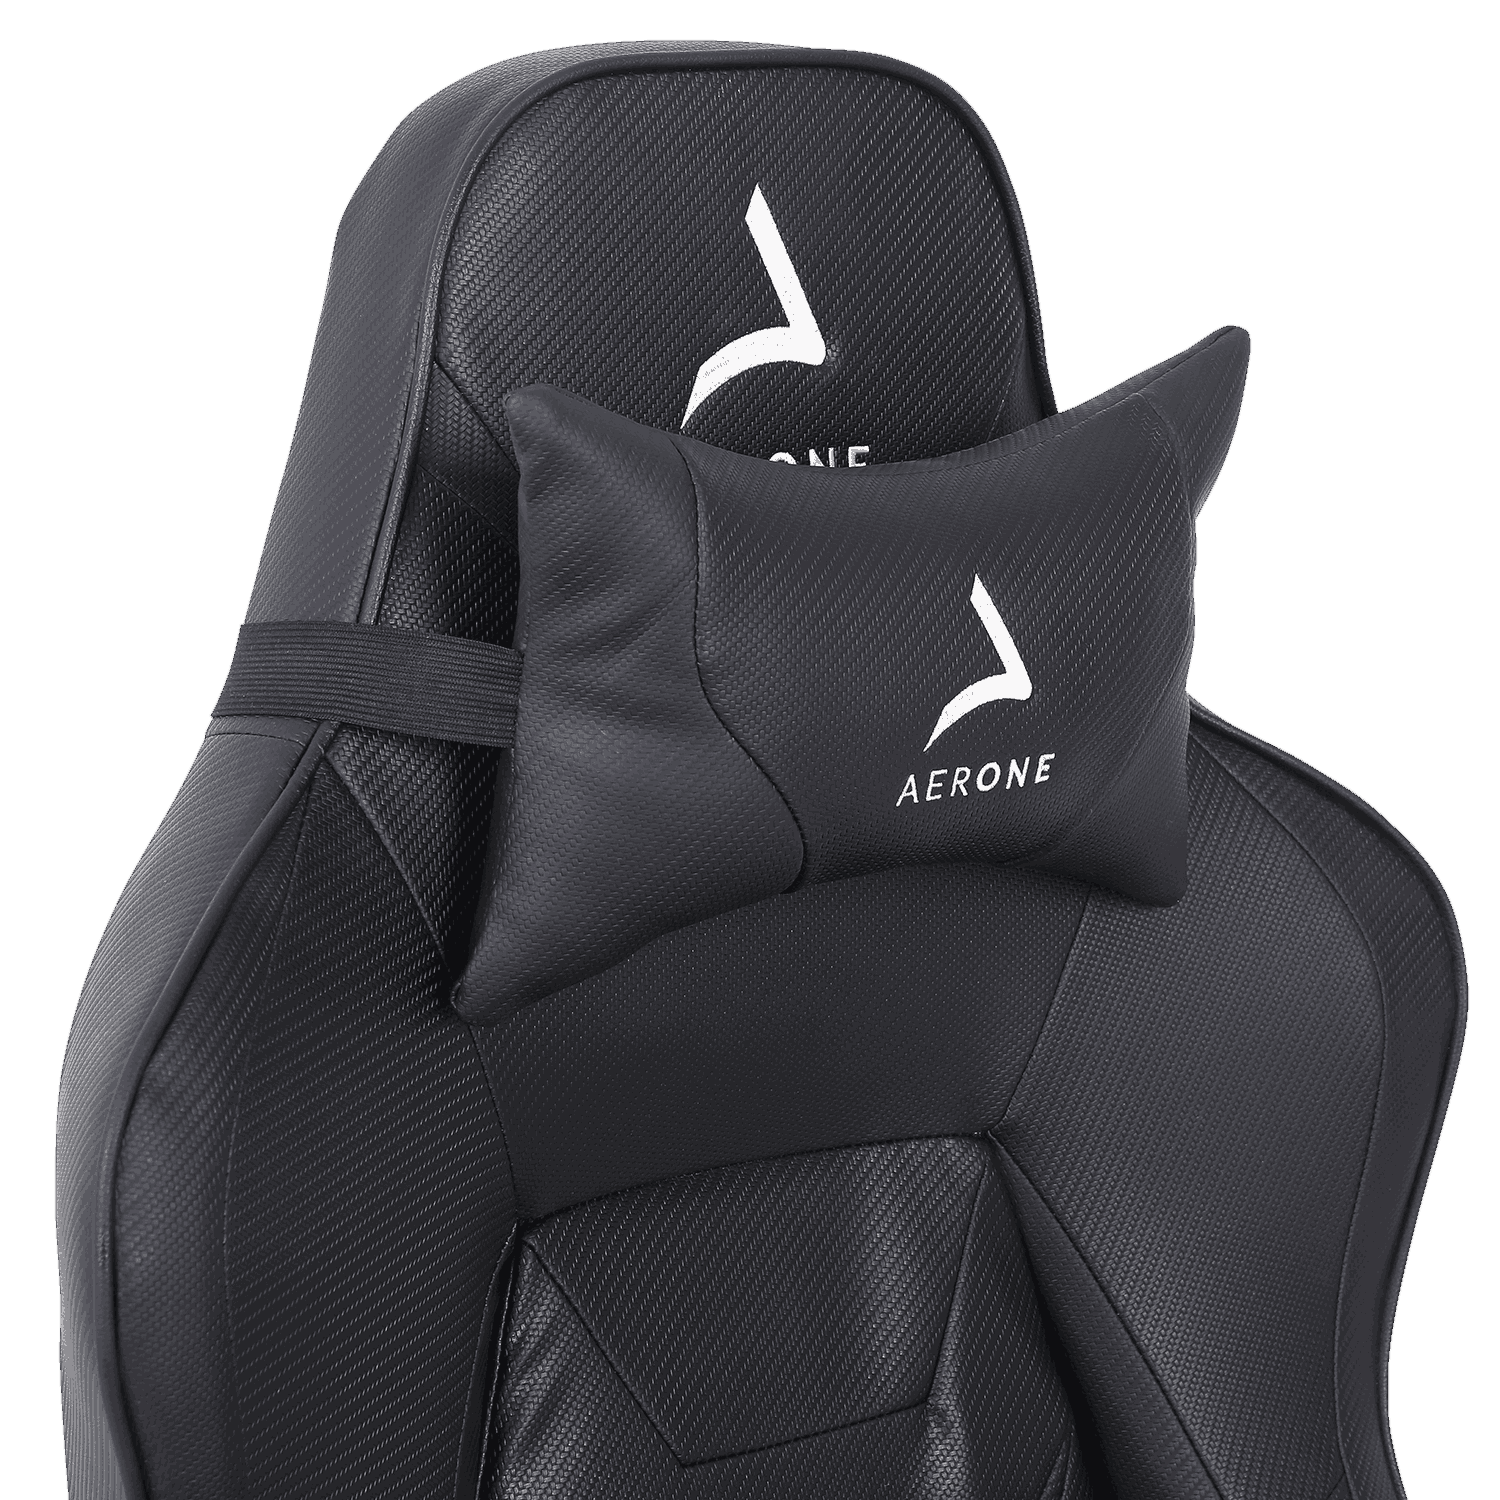 Iridium Series Void Black Gaming Chair (Vorbestellung)